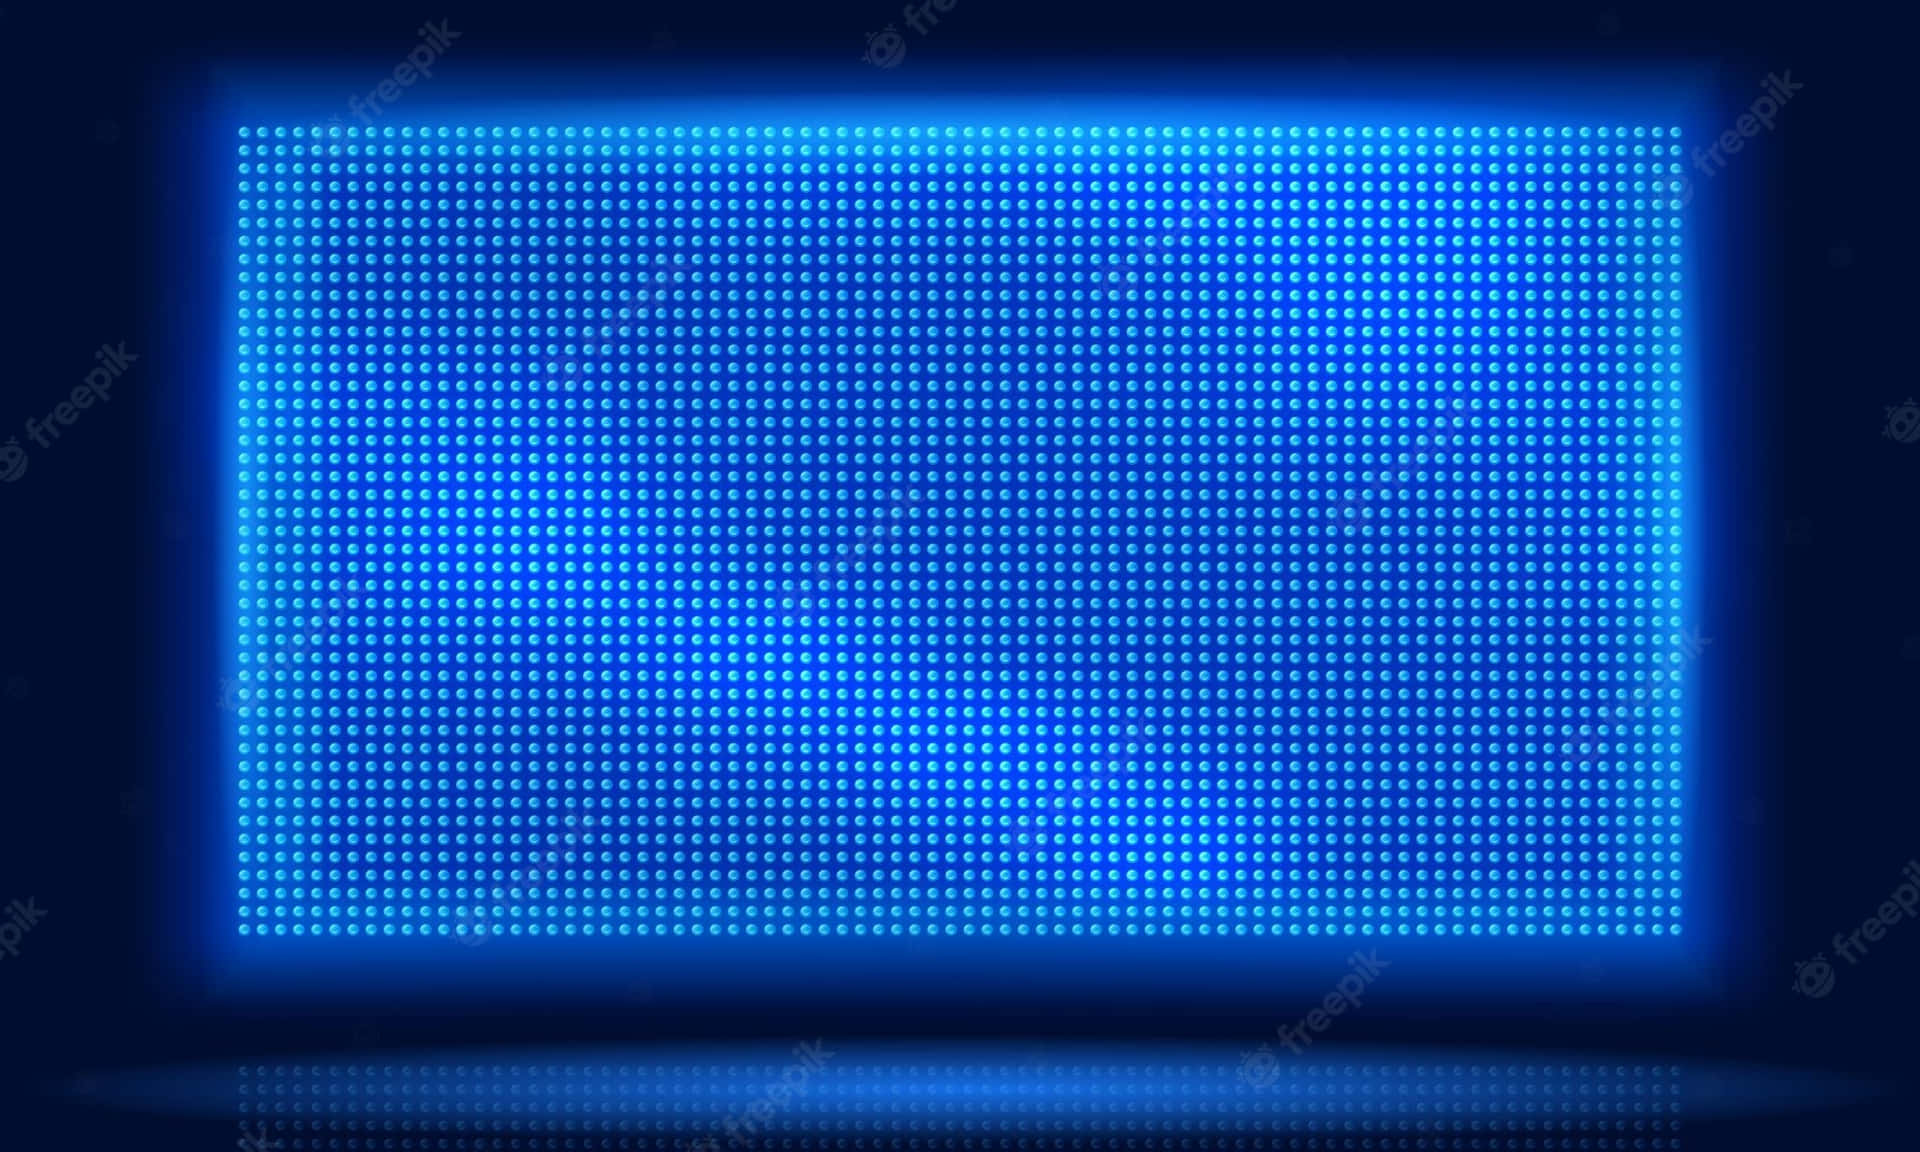 Rediseñatu Espacio Hogareño Con Iluminación De Alta Tecnología En Color Azul Led. Fondo de pantalla